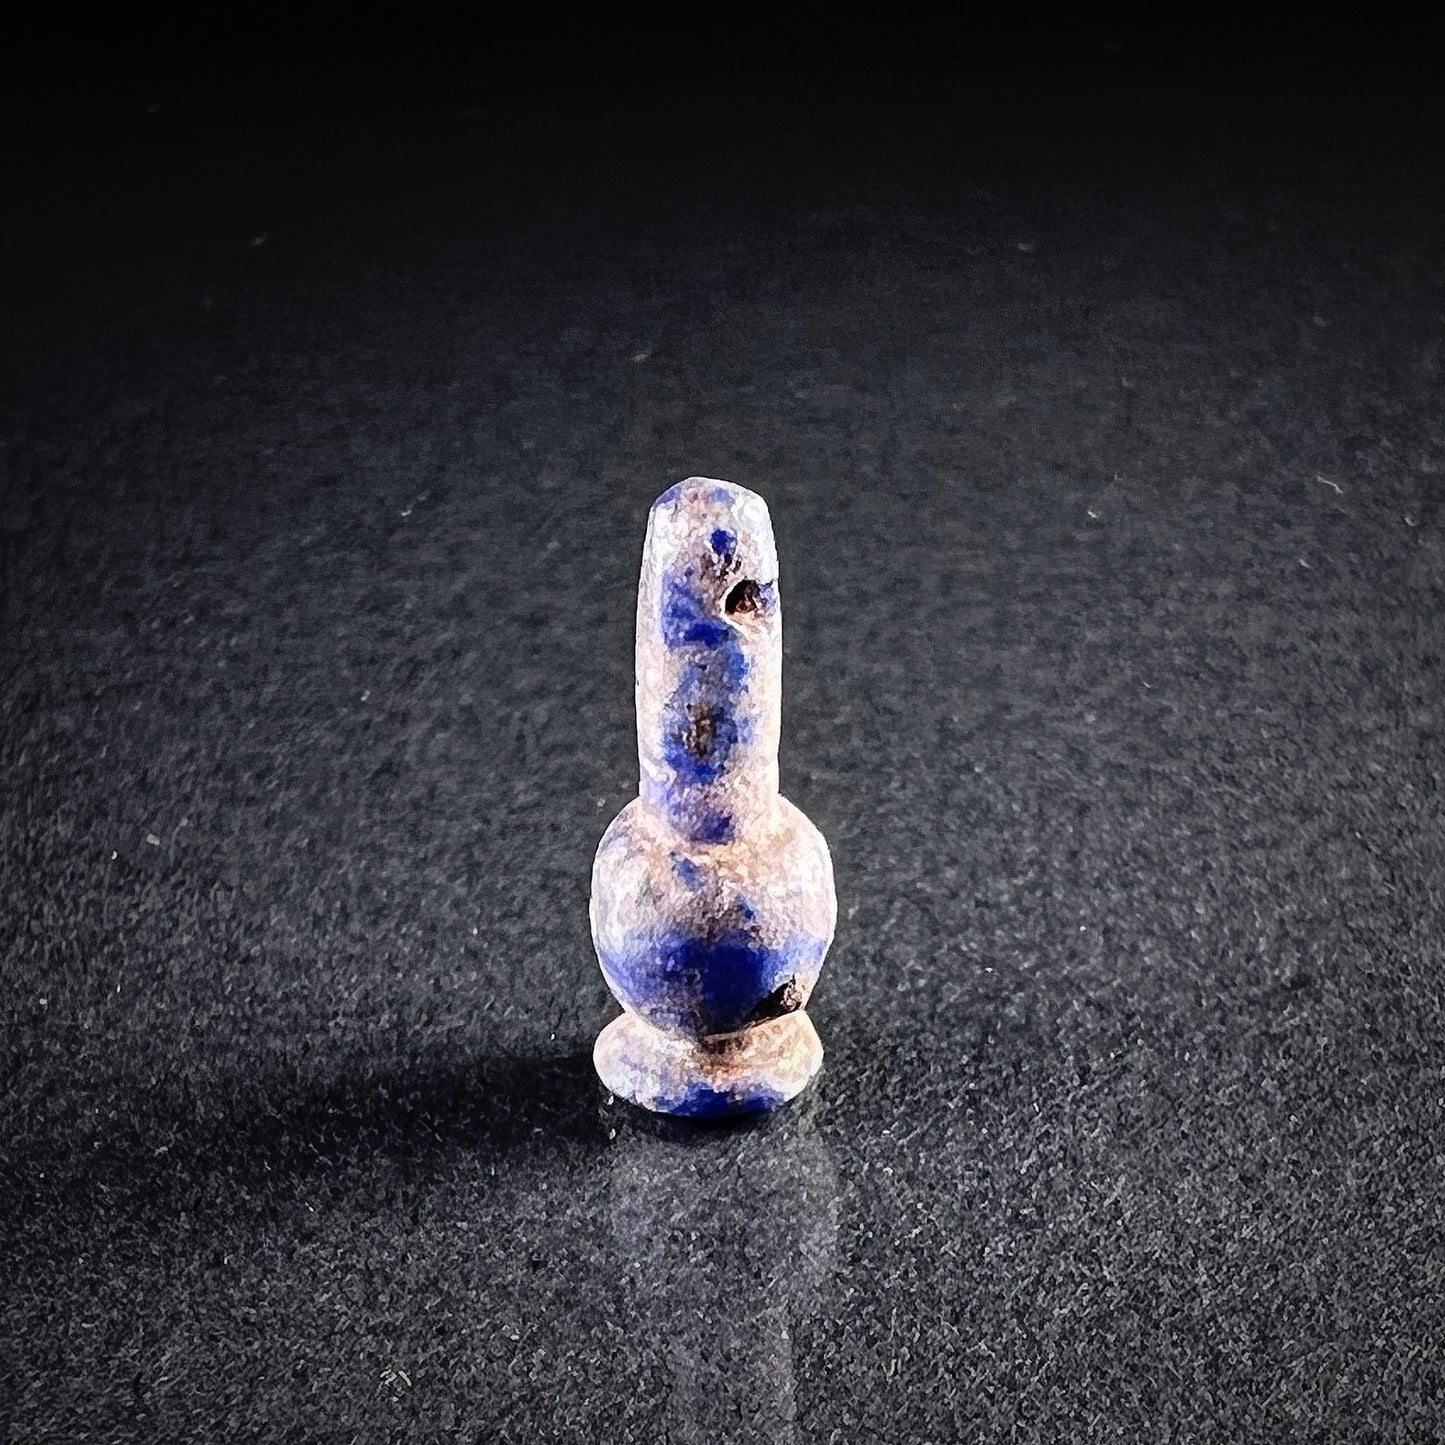 Muinaisegyptiläinen unikkoamuletti, lapis lazuli  - yksittäiskappale